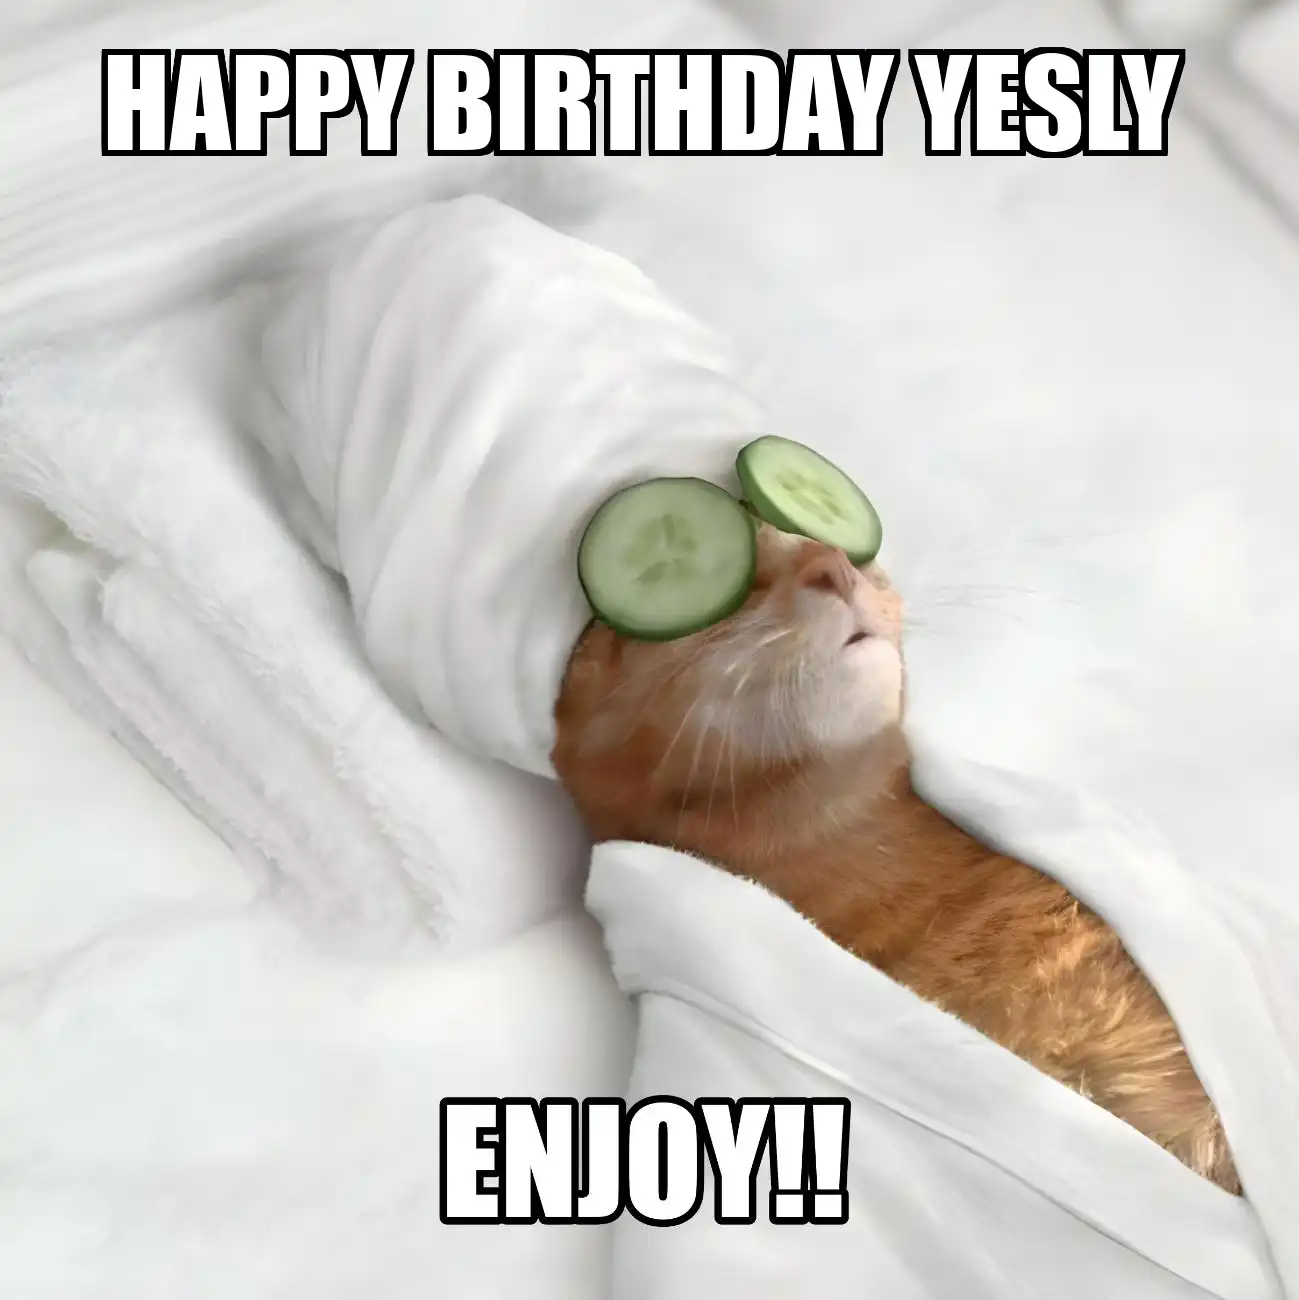 Happy Birthday Yesly Enjoy Cat Meme